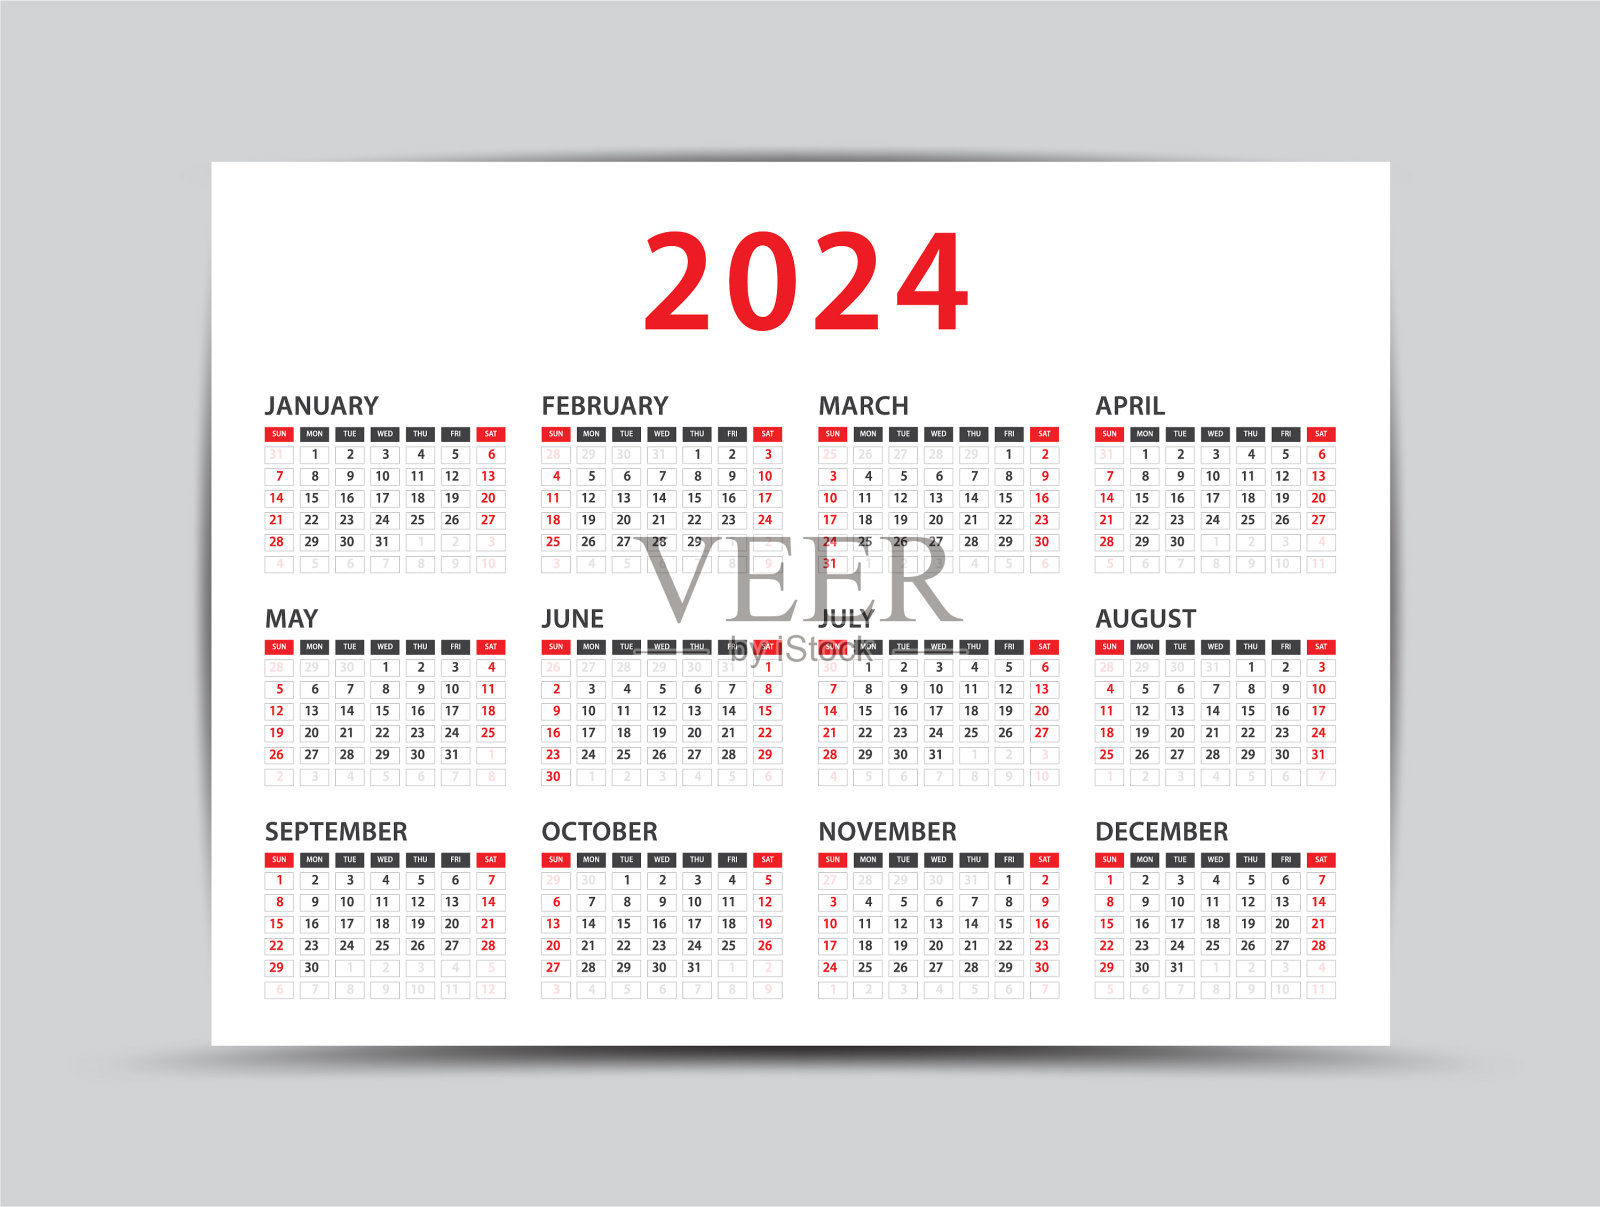 2024年日历全年表 模板E型 免费下载 - 日历精灵